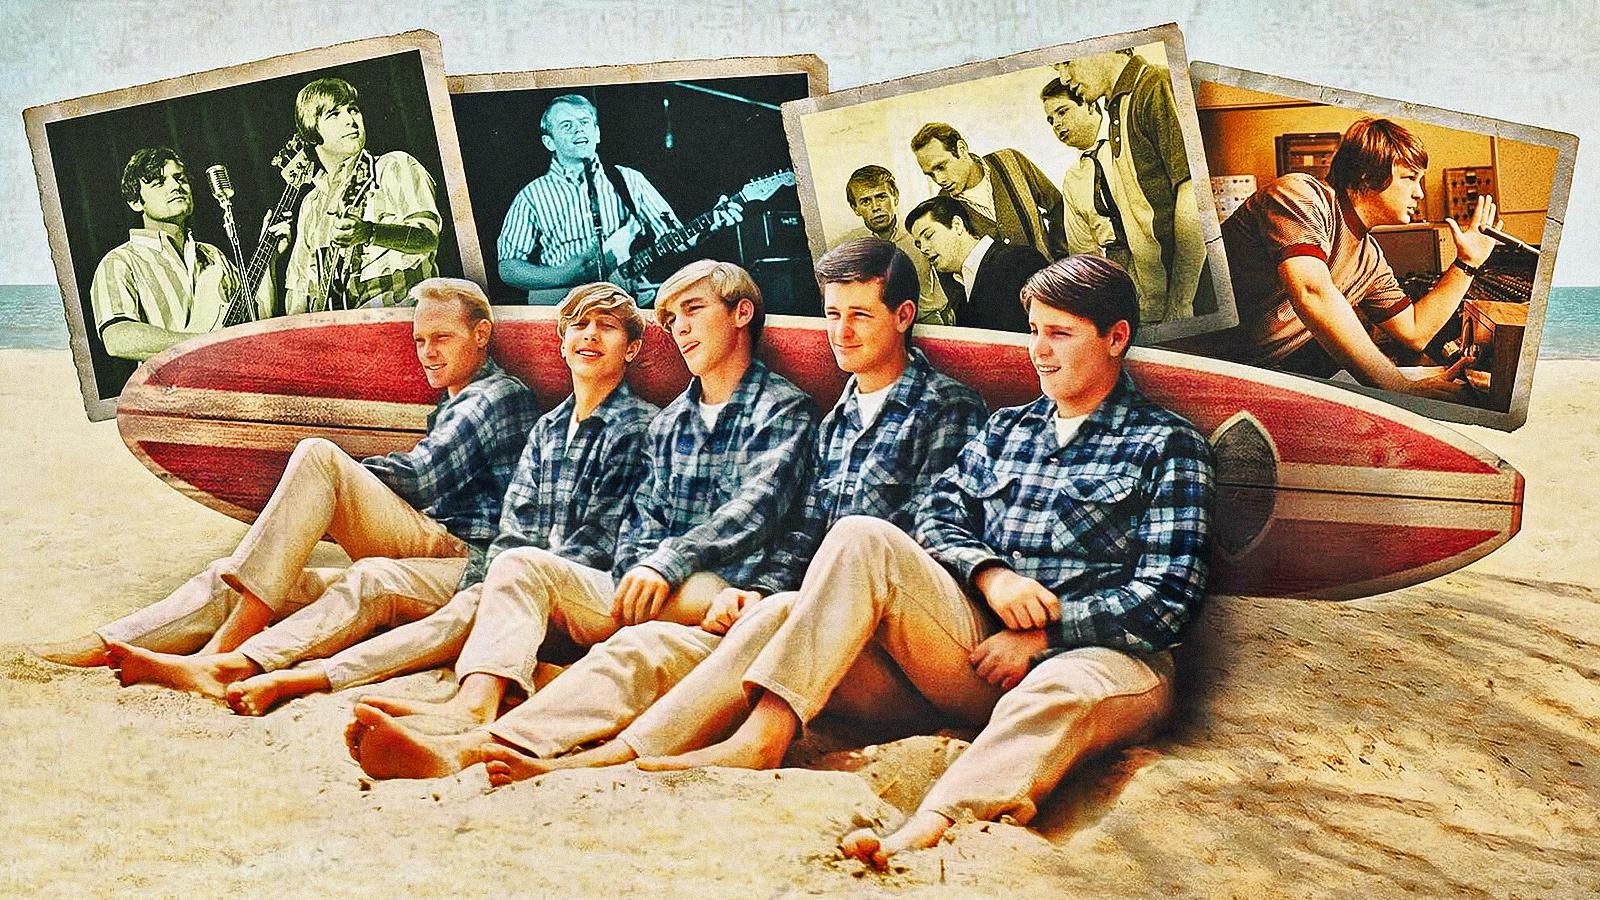 Un'immagine di The Beach Boys